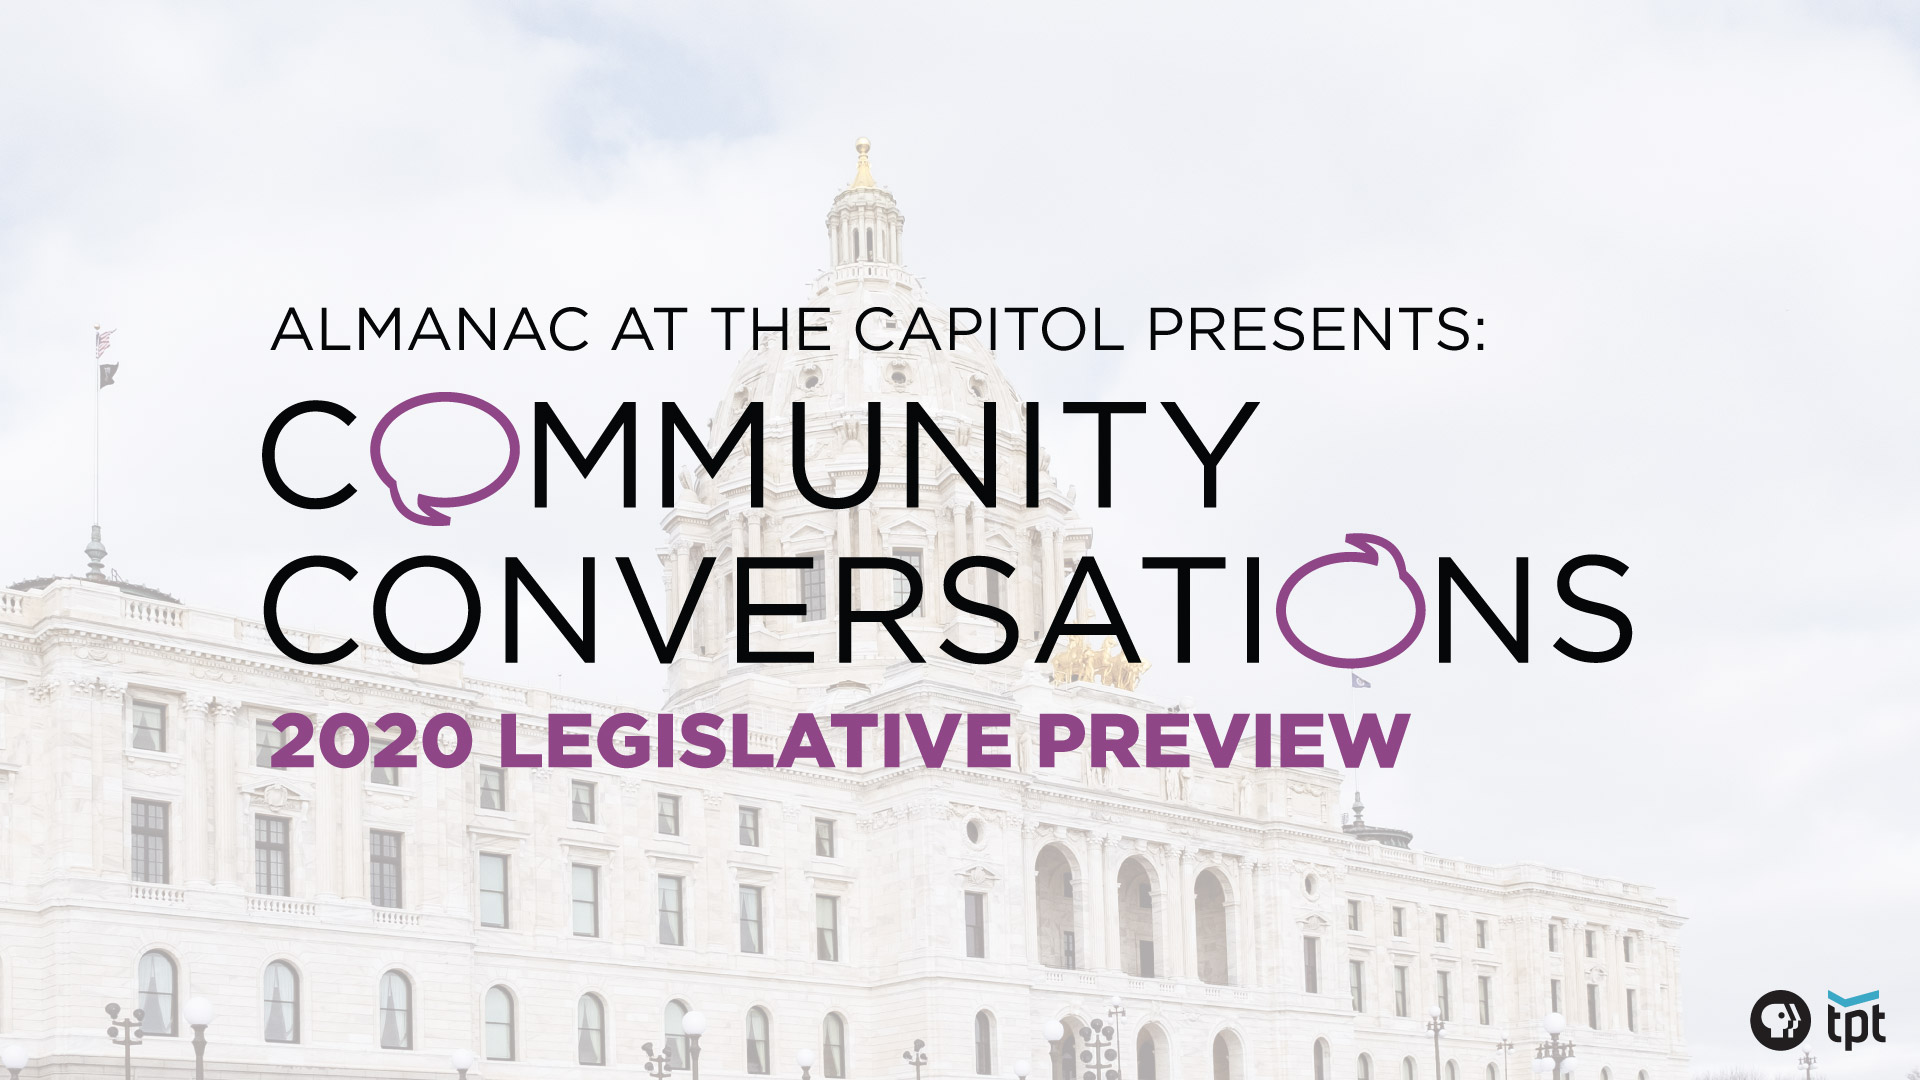 Almanac at the Capitol presents Community Conversations: 2020 Legislative Preview